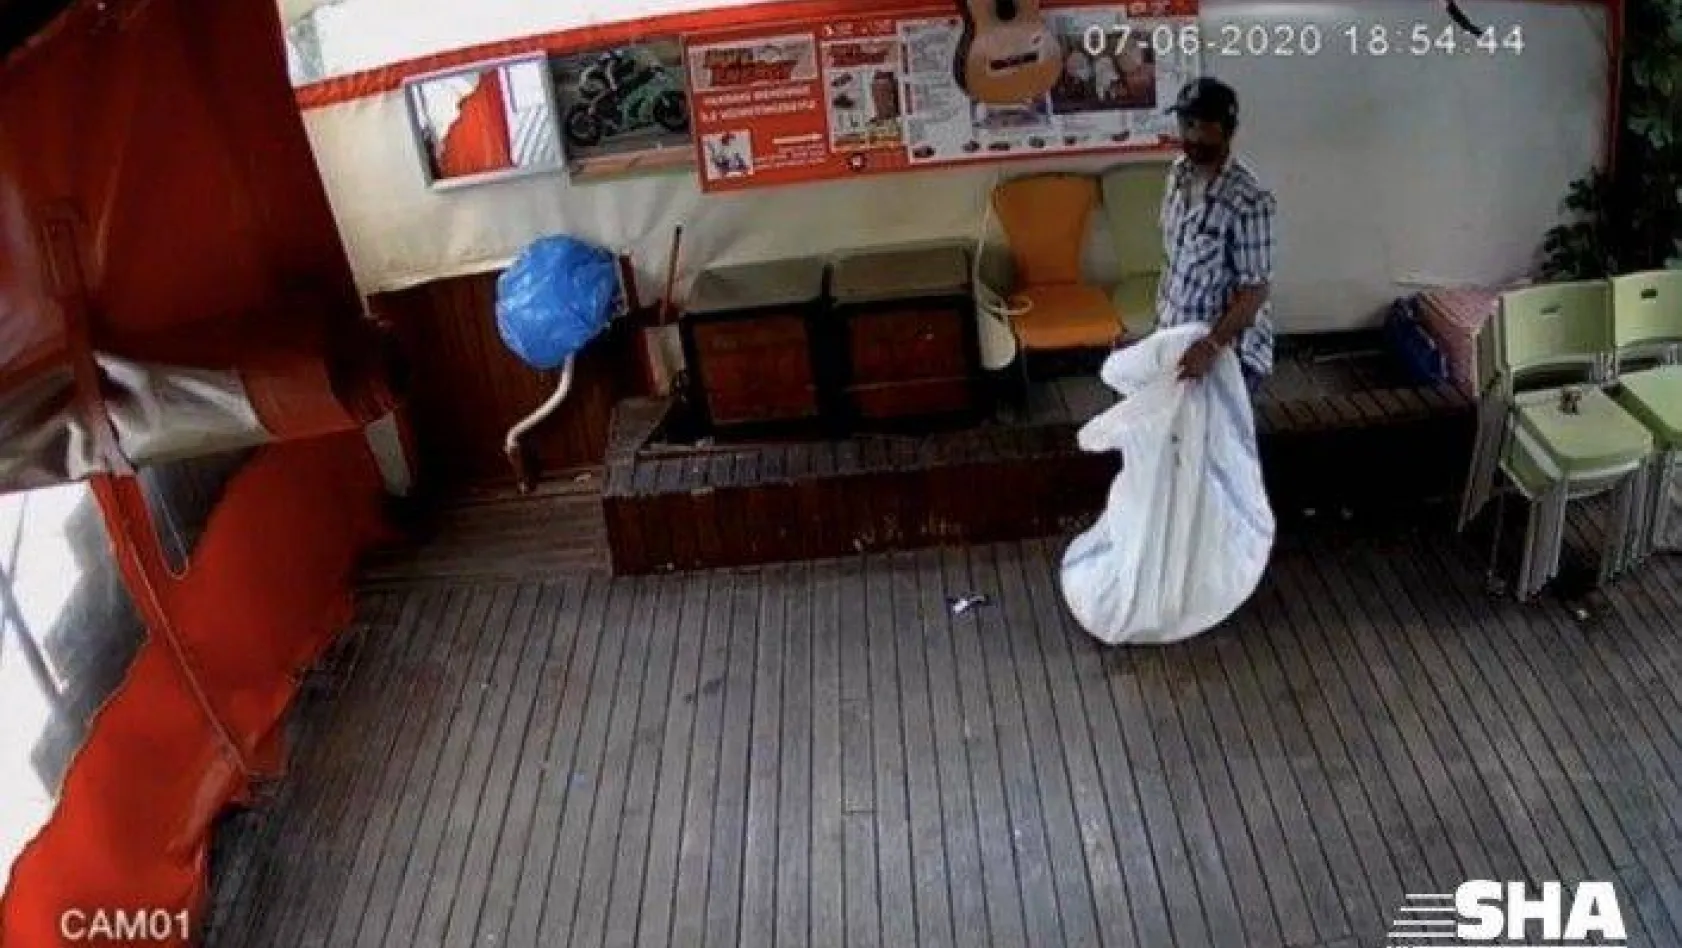 (Özel) İstanbul'un göbeğinde ilginç hırsızlık kamerada